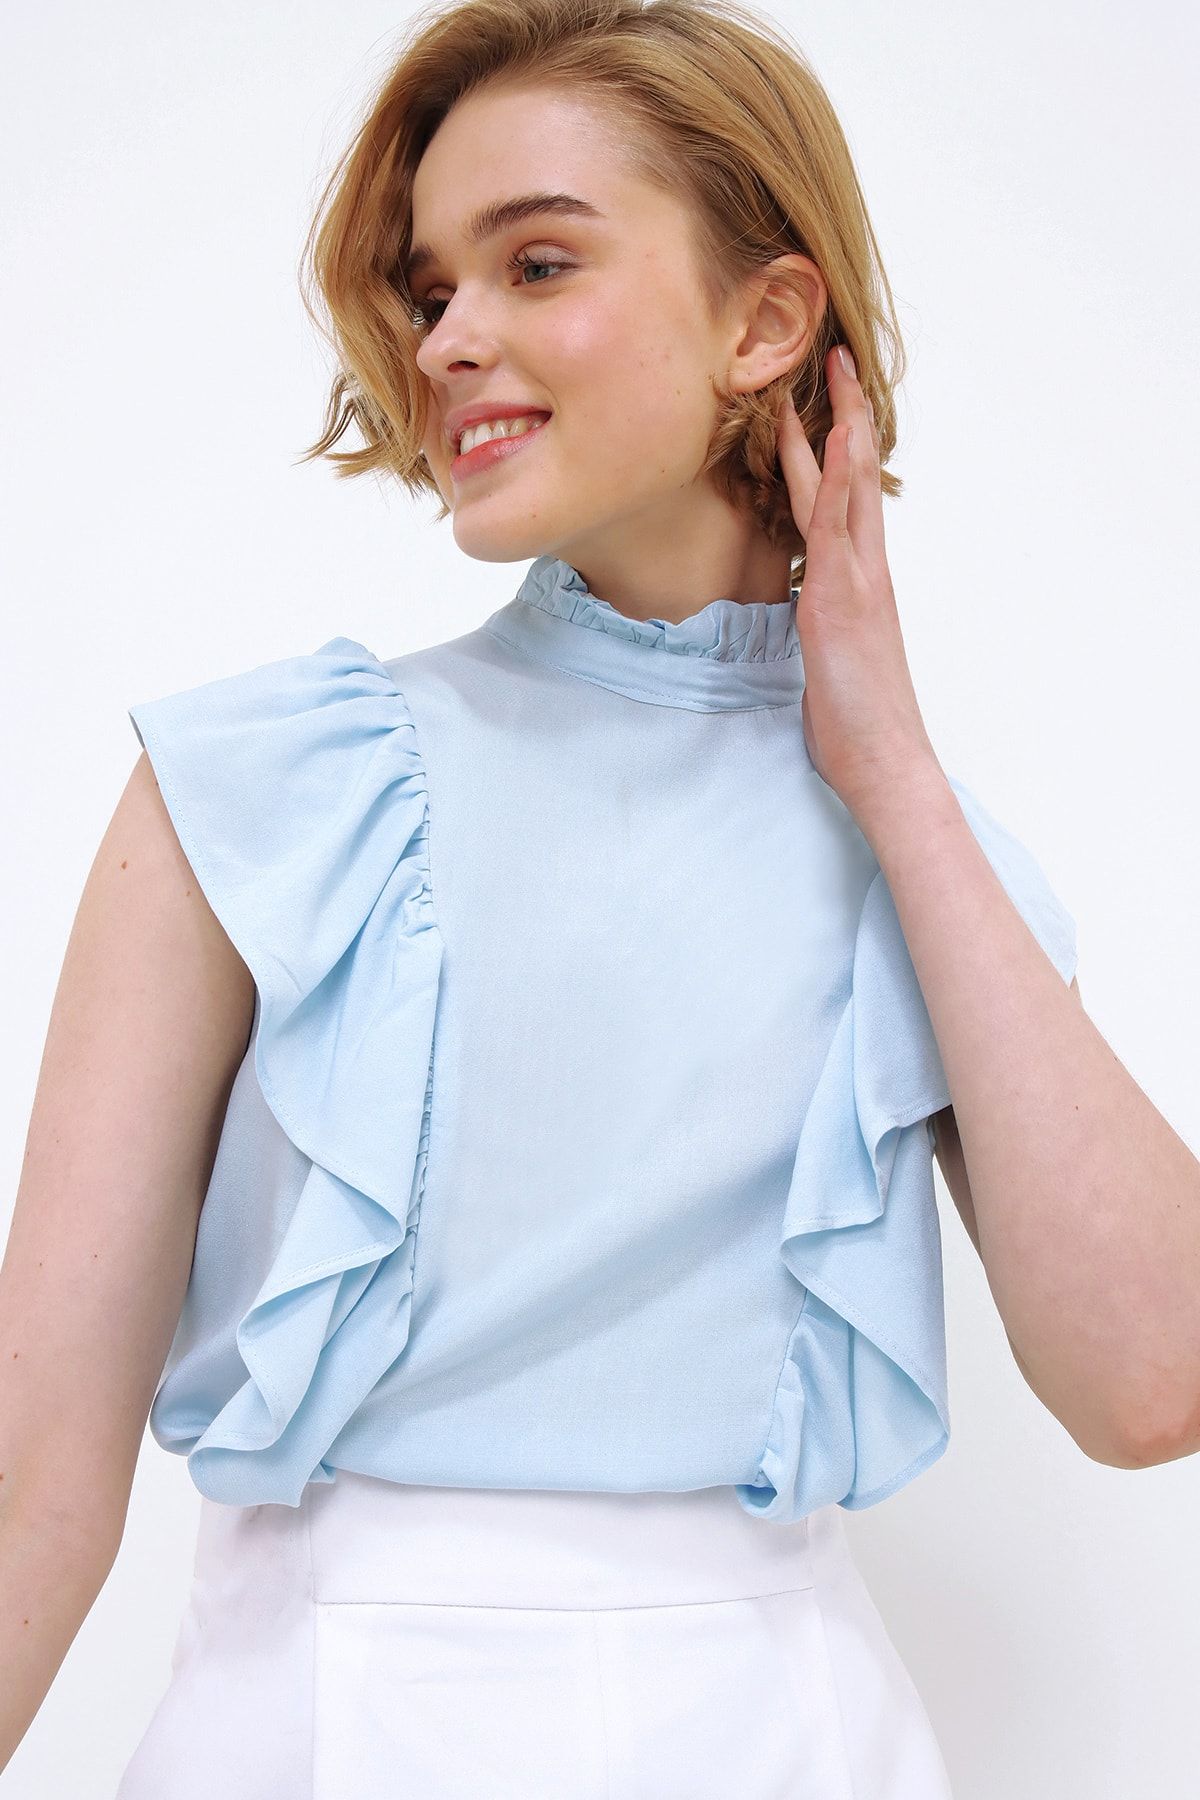 Trend Alaçatı Stili Kadın Mavi Yakası Ve Kolları Fırfırlı Dokuma Bluz Dnz-3180